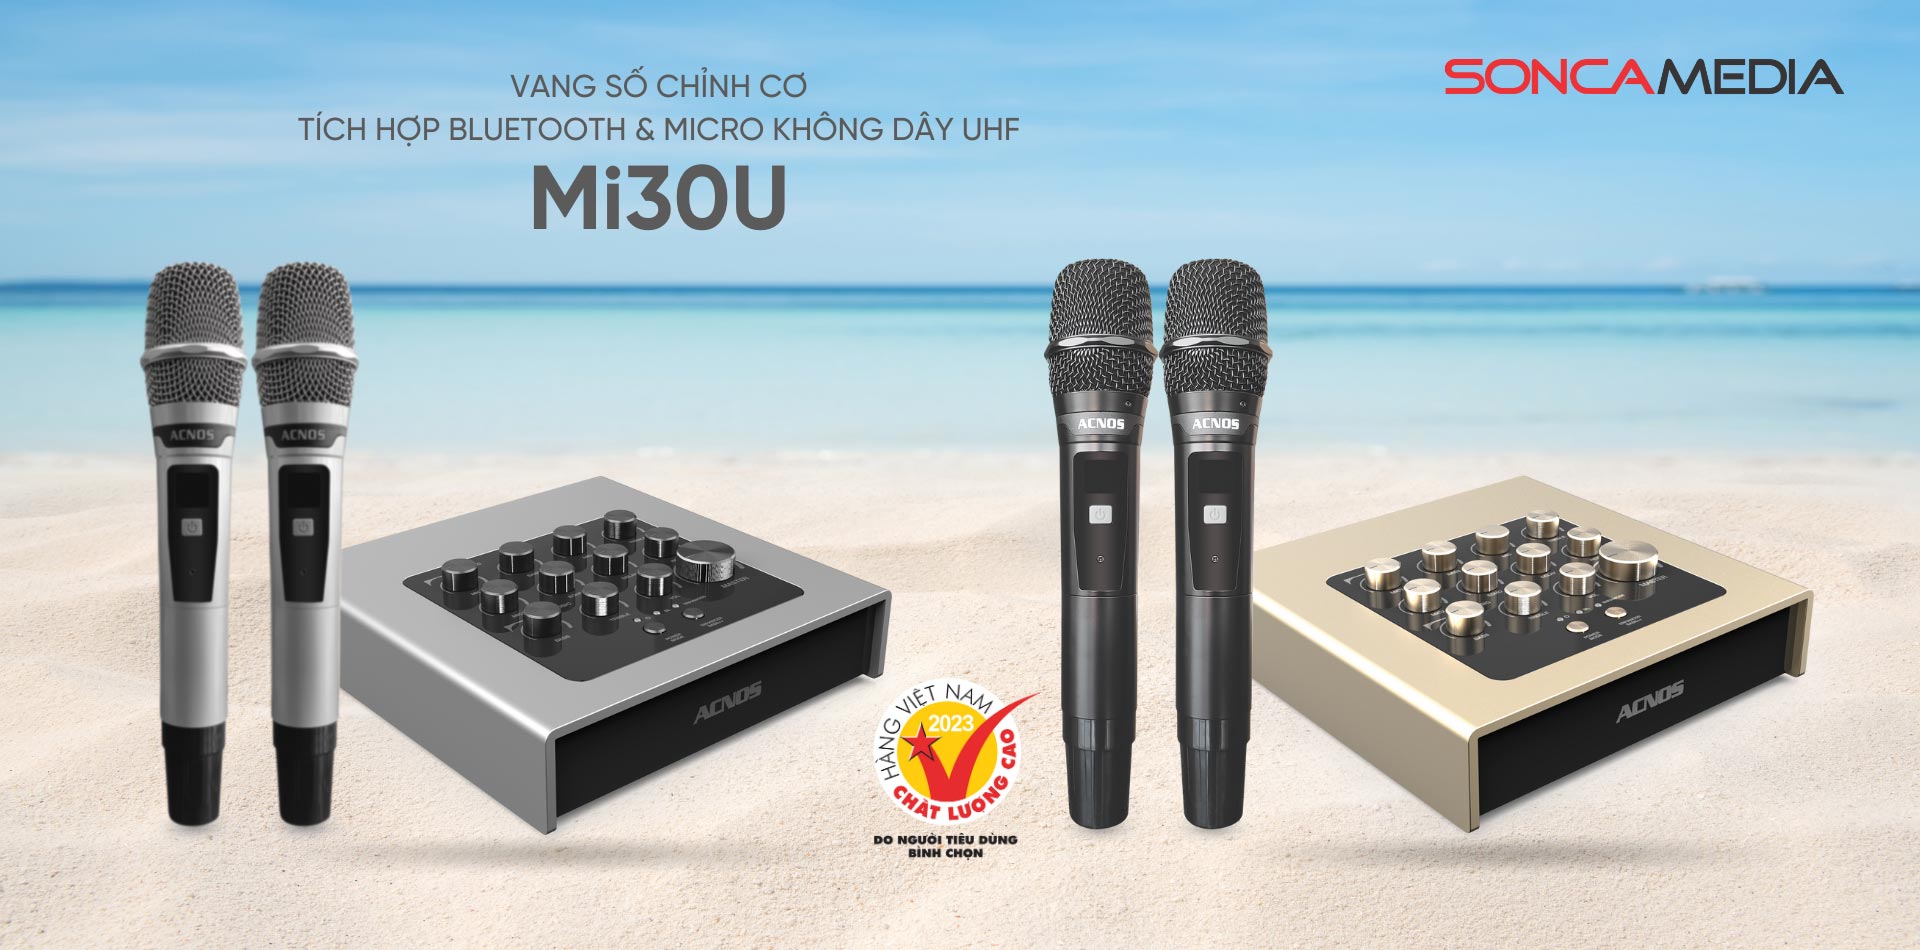 mi30u-acnos-vang-so-chinh-co-tich-hop-bluetooth-va-micro-khong-day